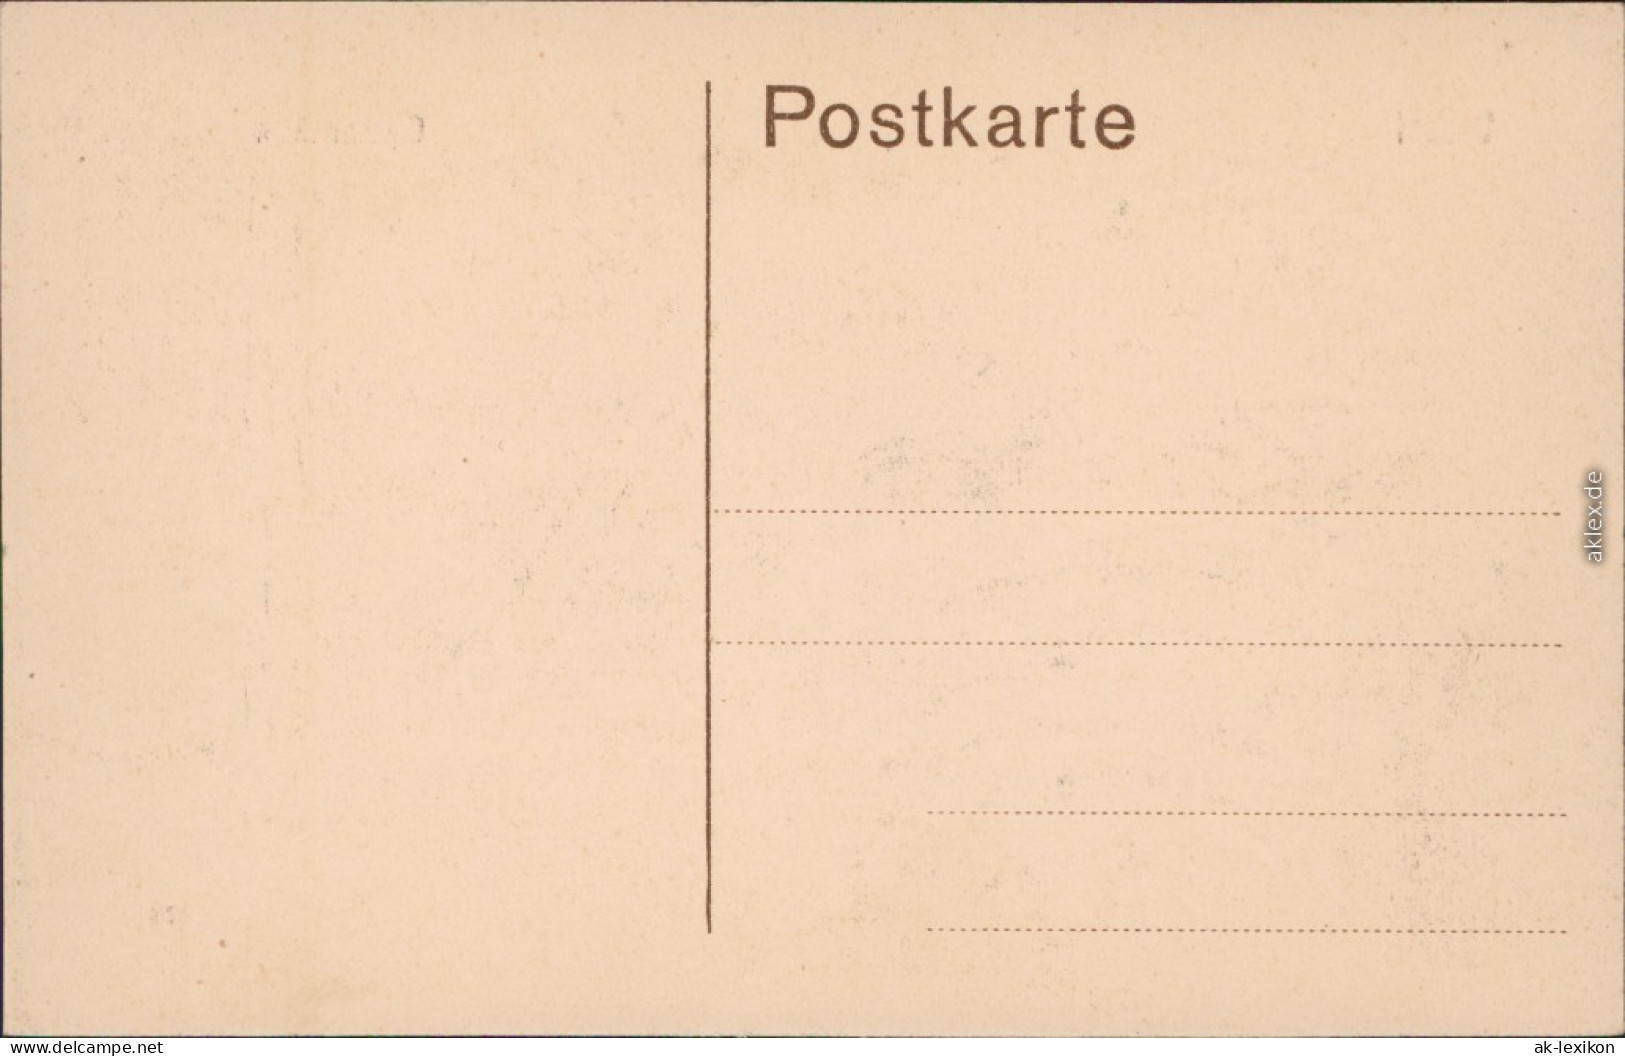 Wesel Partie Am Gymnasium Ansichtskarte 1914 - Wesel